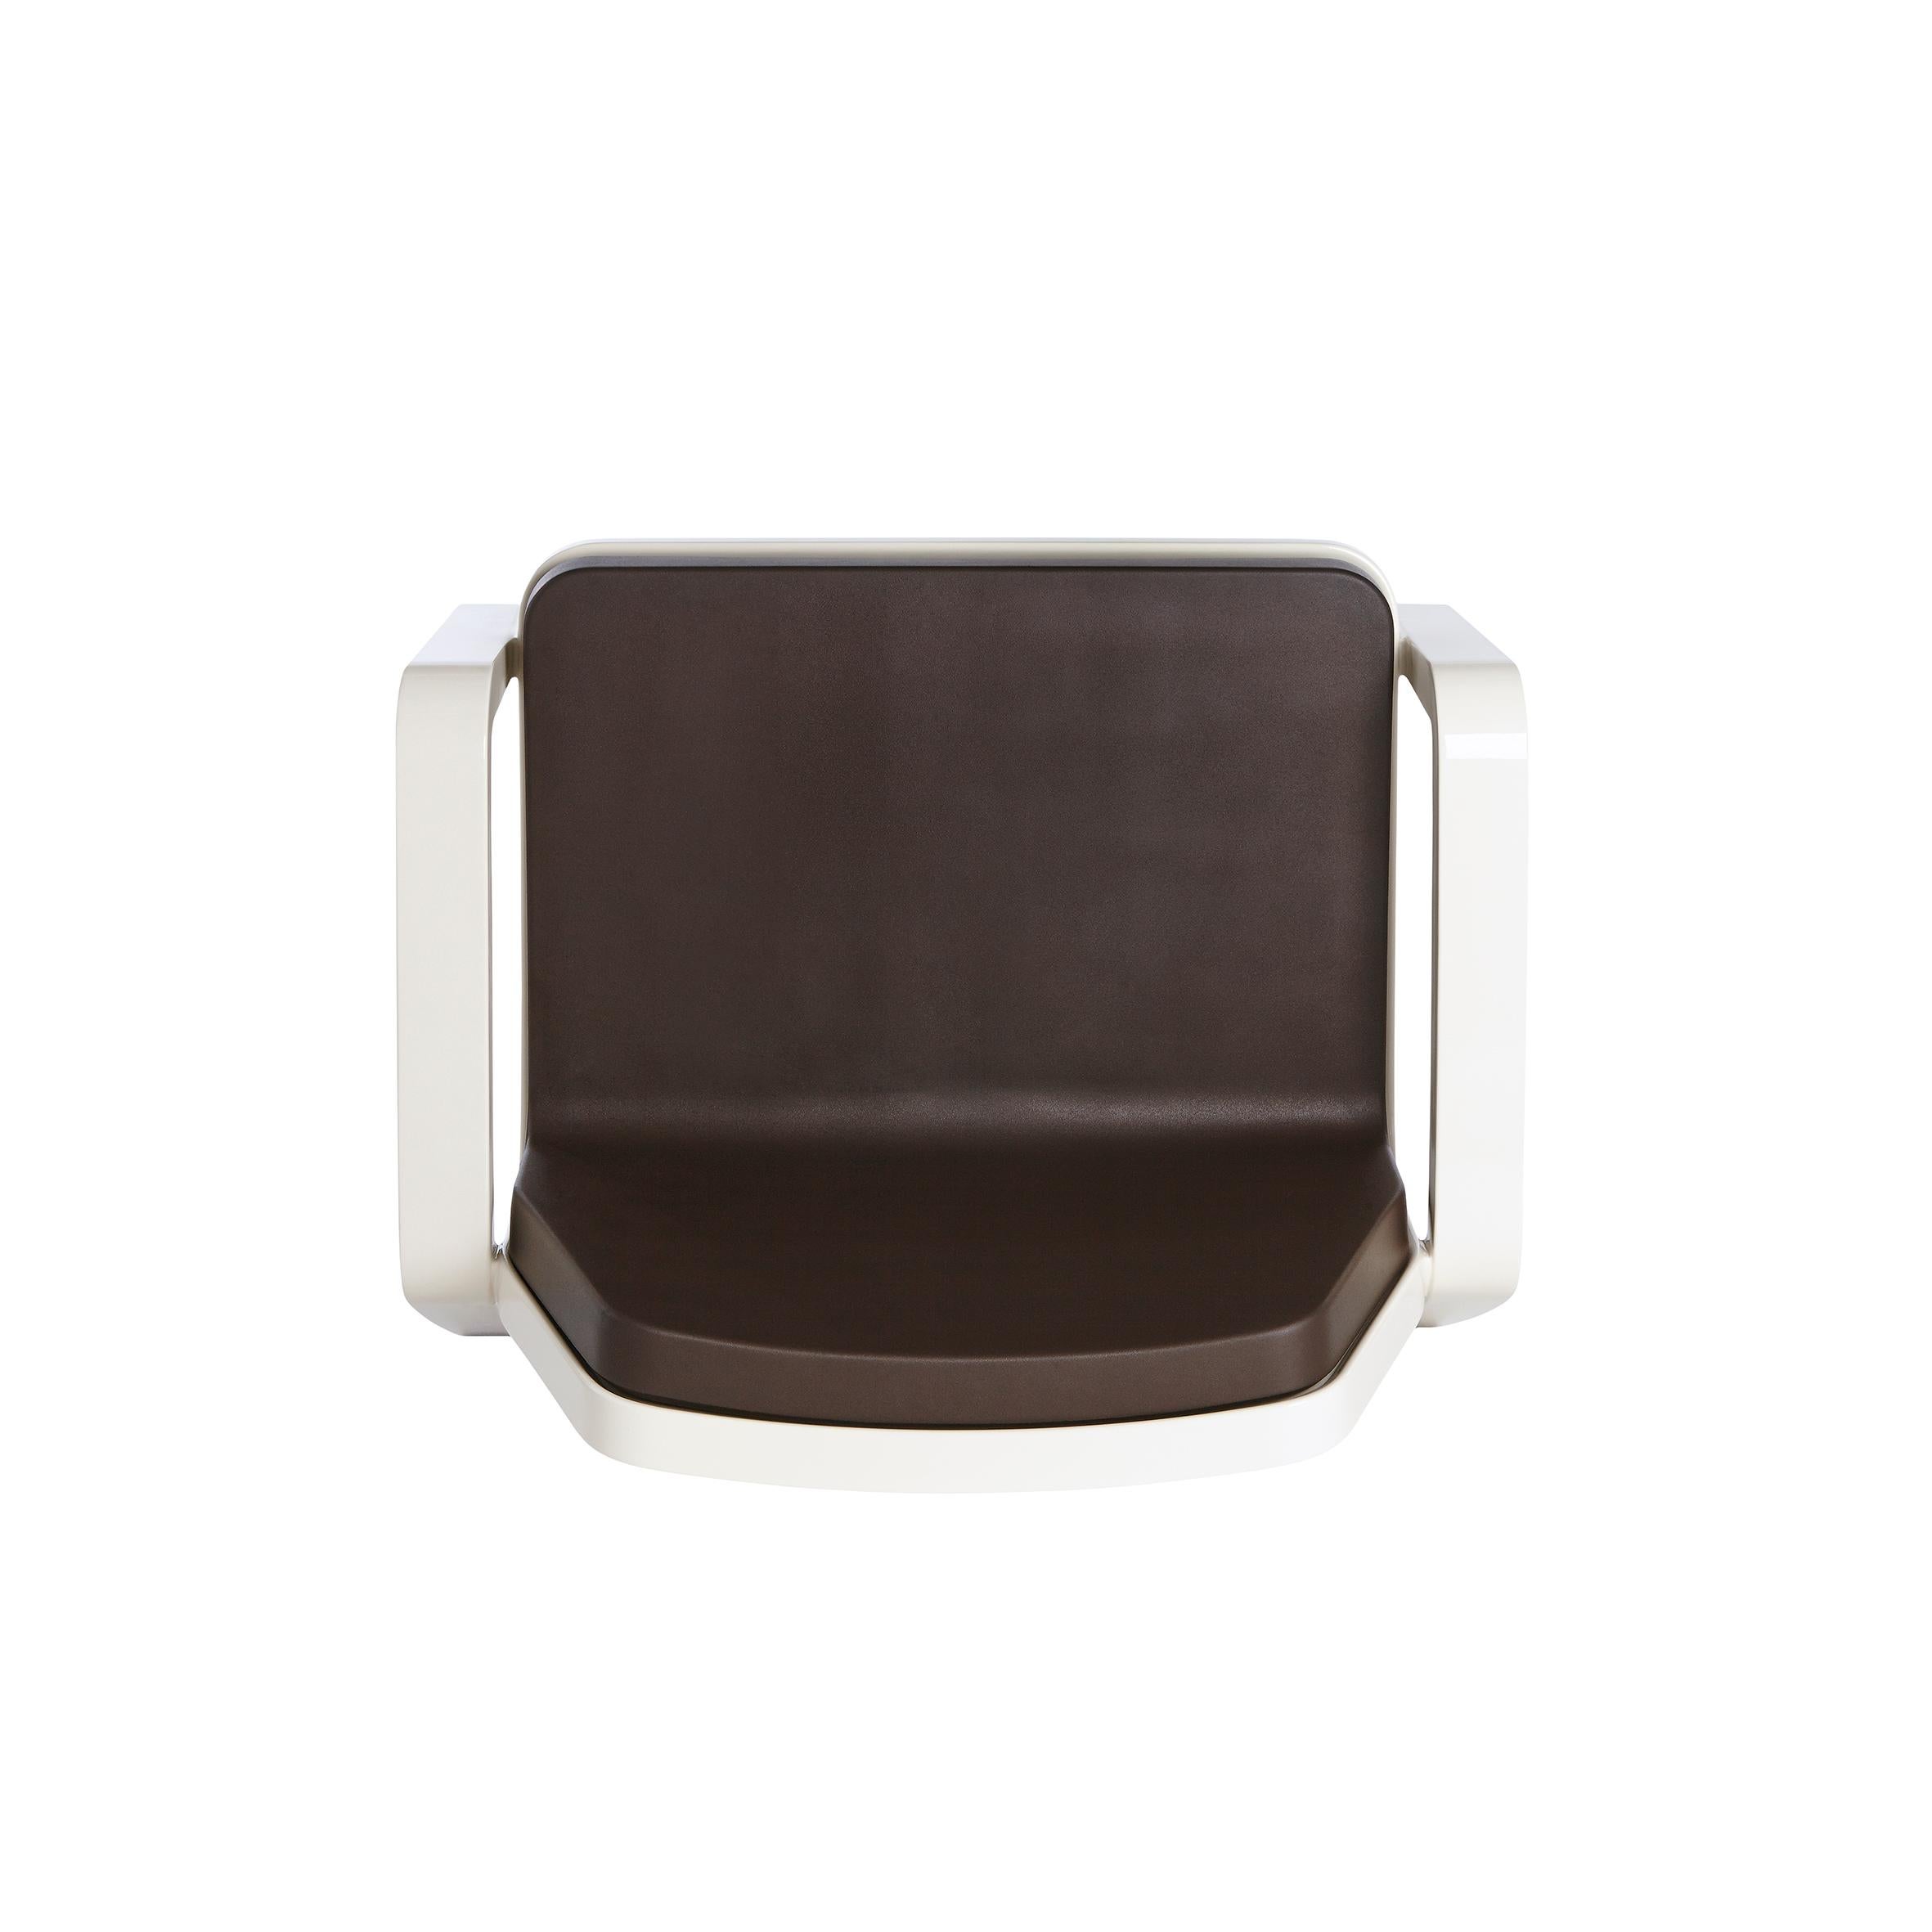 Der Designer Marc Sadler entwirft einen Retro-Sessel, inspiriert von den amerikanischen Swinging '50s, mit ihrem einzigartigen und progressiven Stil. America ist ein eleganter Sitz, eine perfekte Mischung aus modernen Materialien und